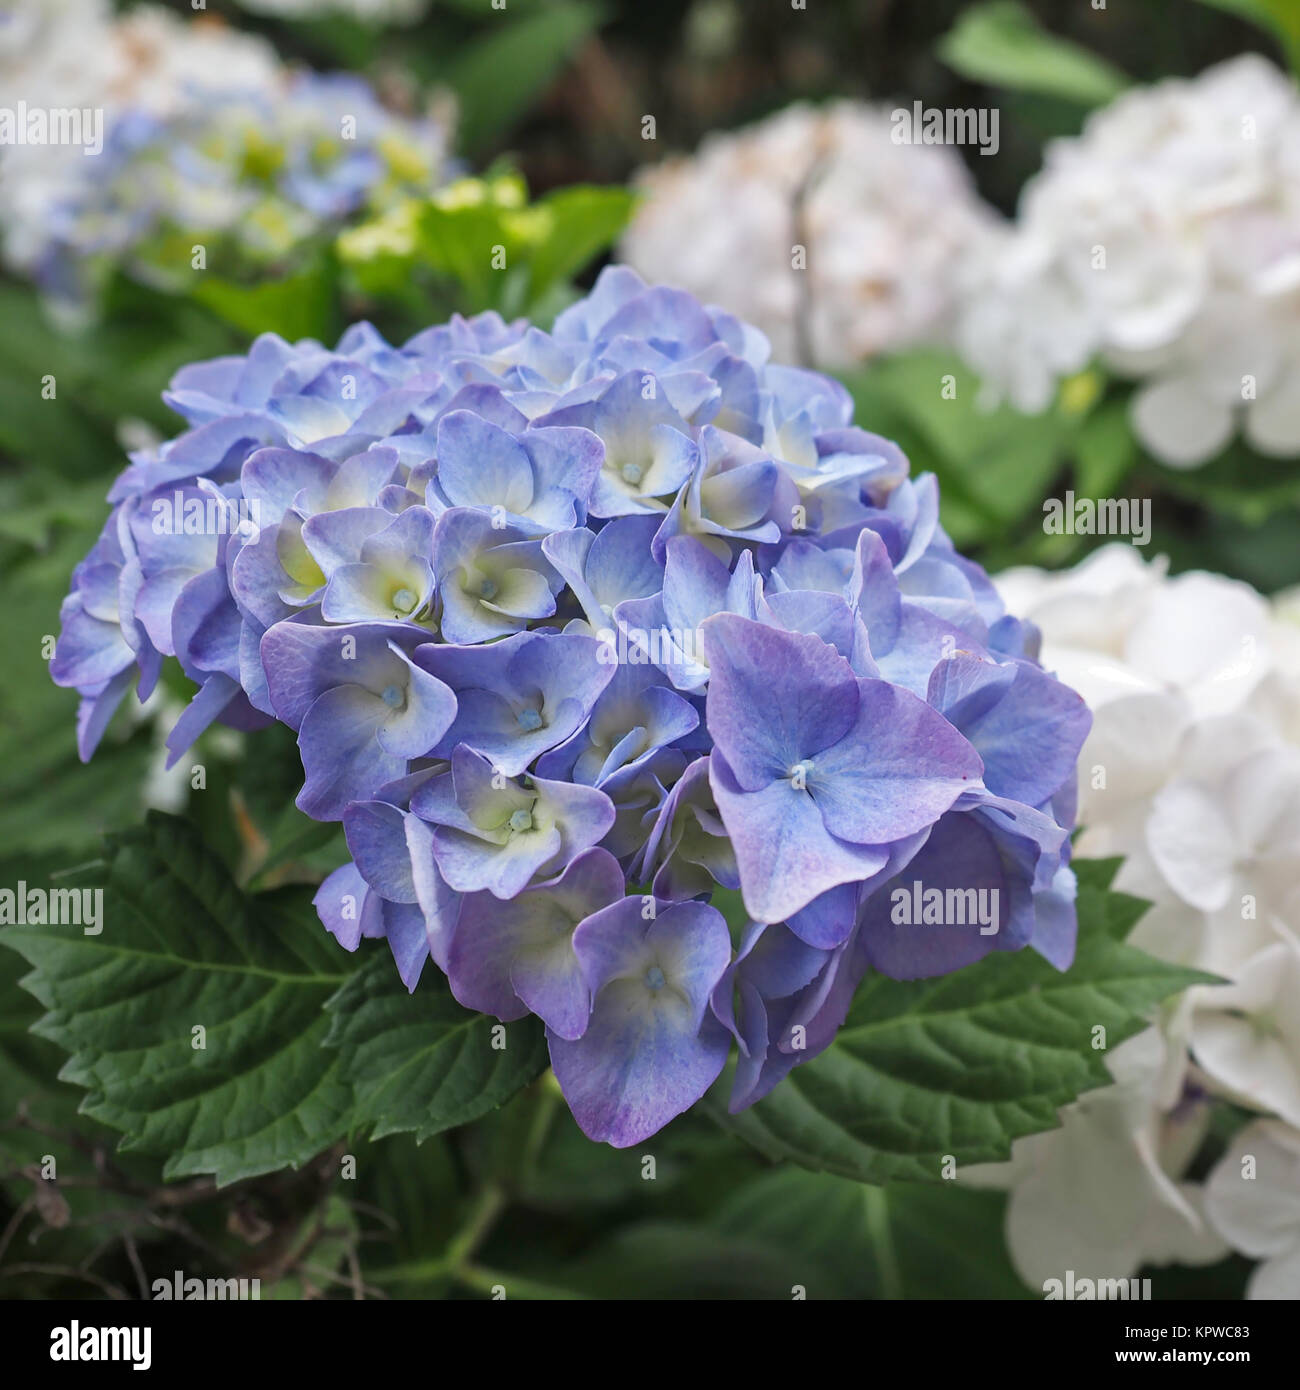 Blue Hydrangea bracts closeup Stock Photo